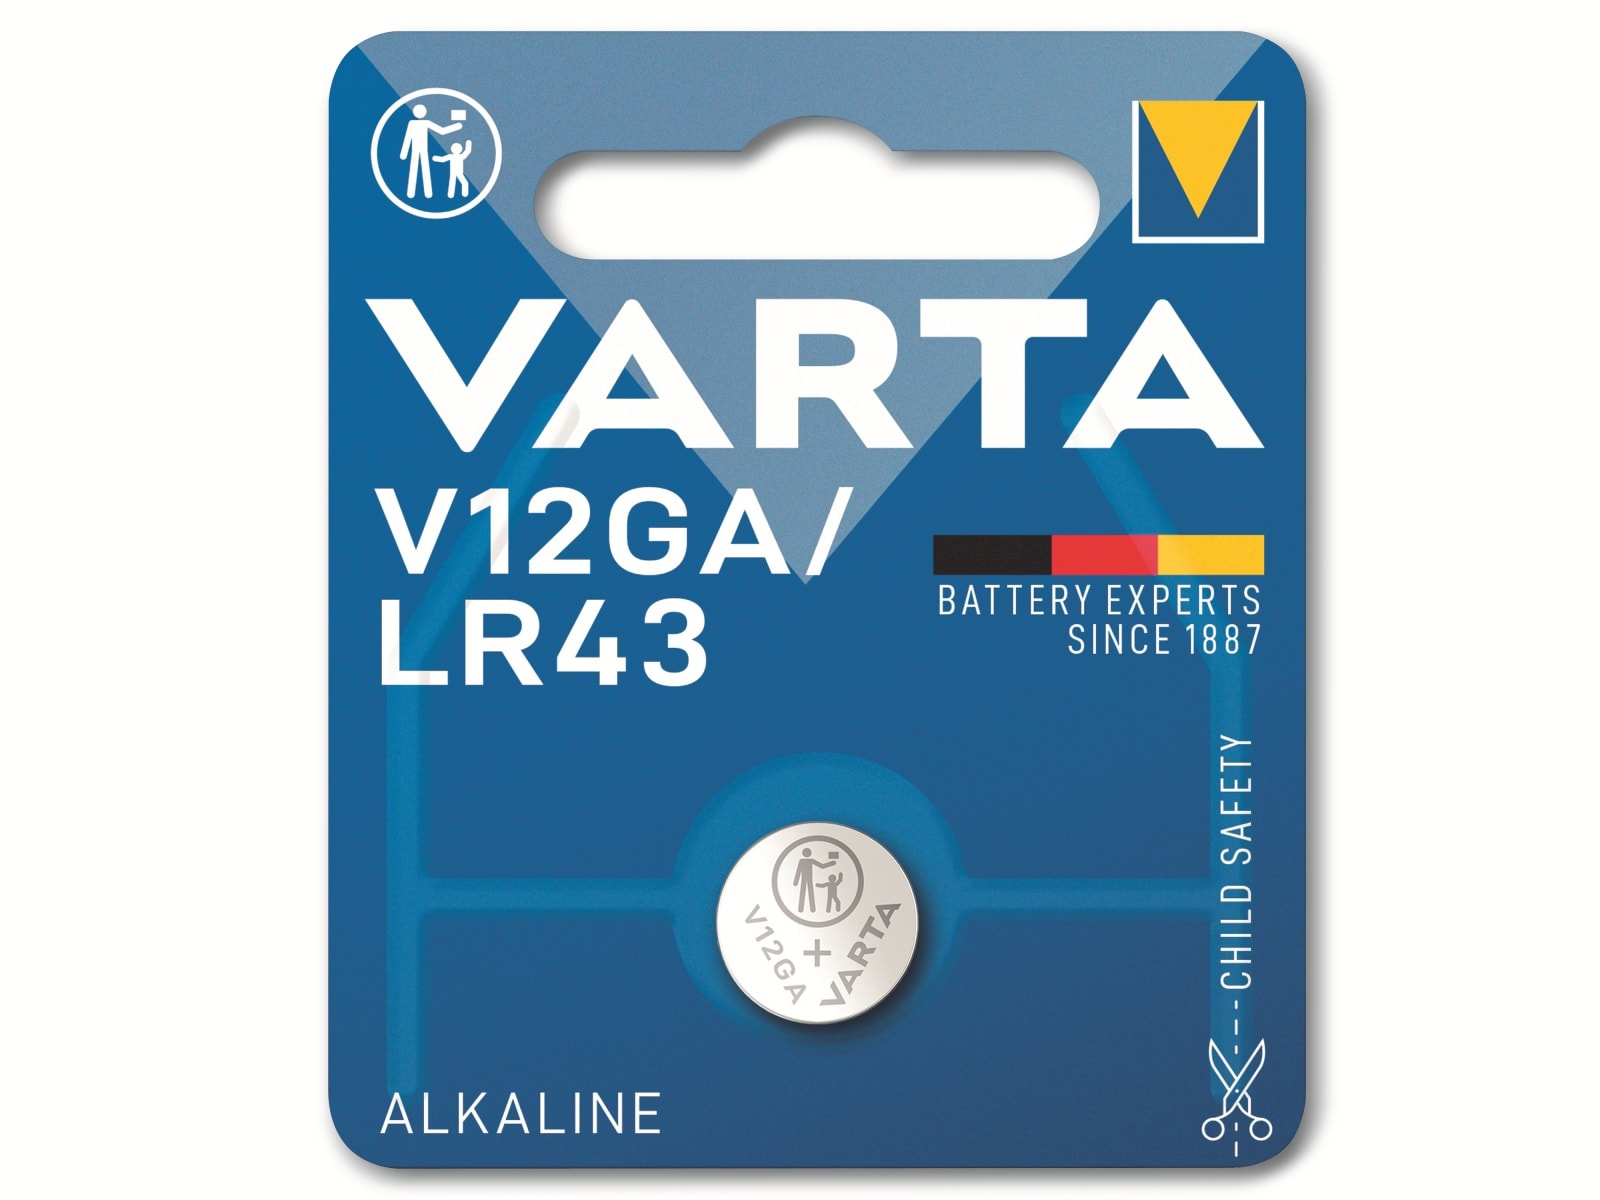 VARTA Knopfzelle Alkaline, LR43,  1.5V V12GA,  1.5V, 1 Stück